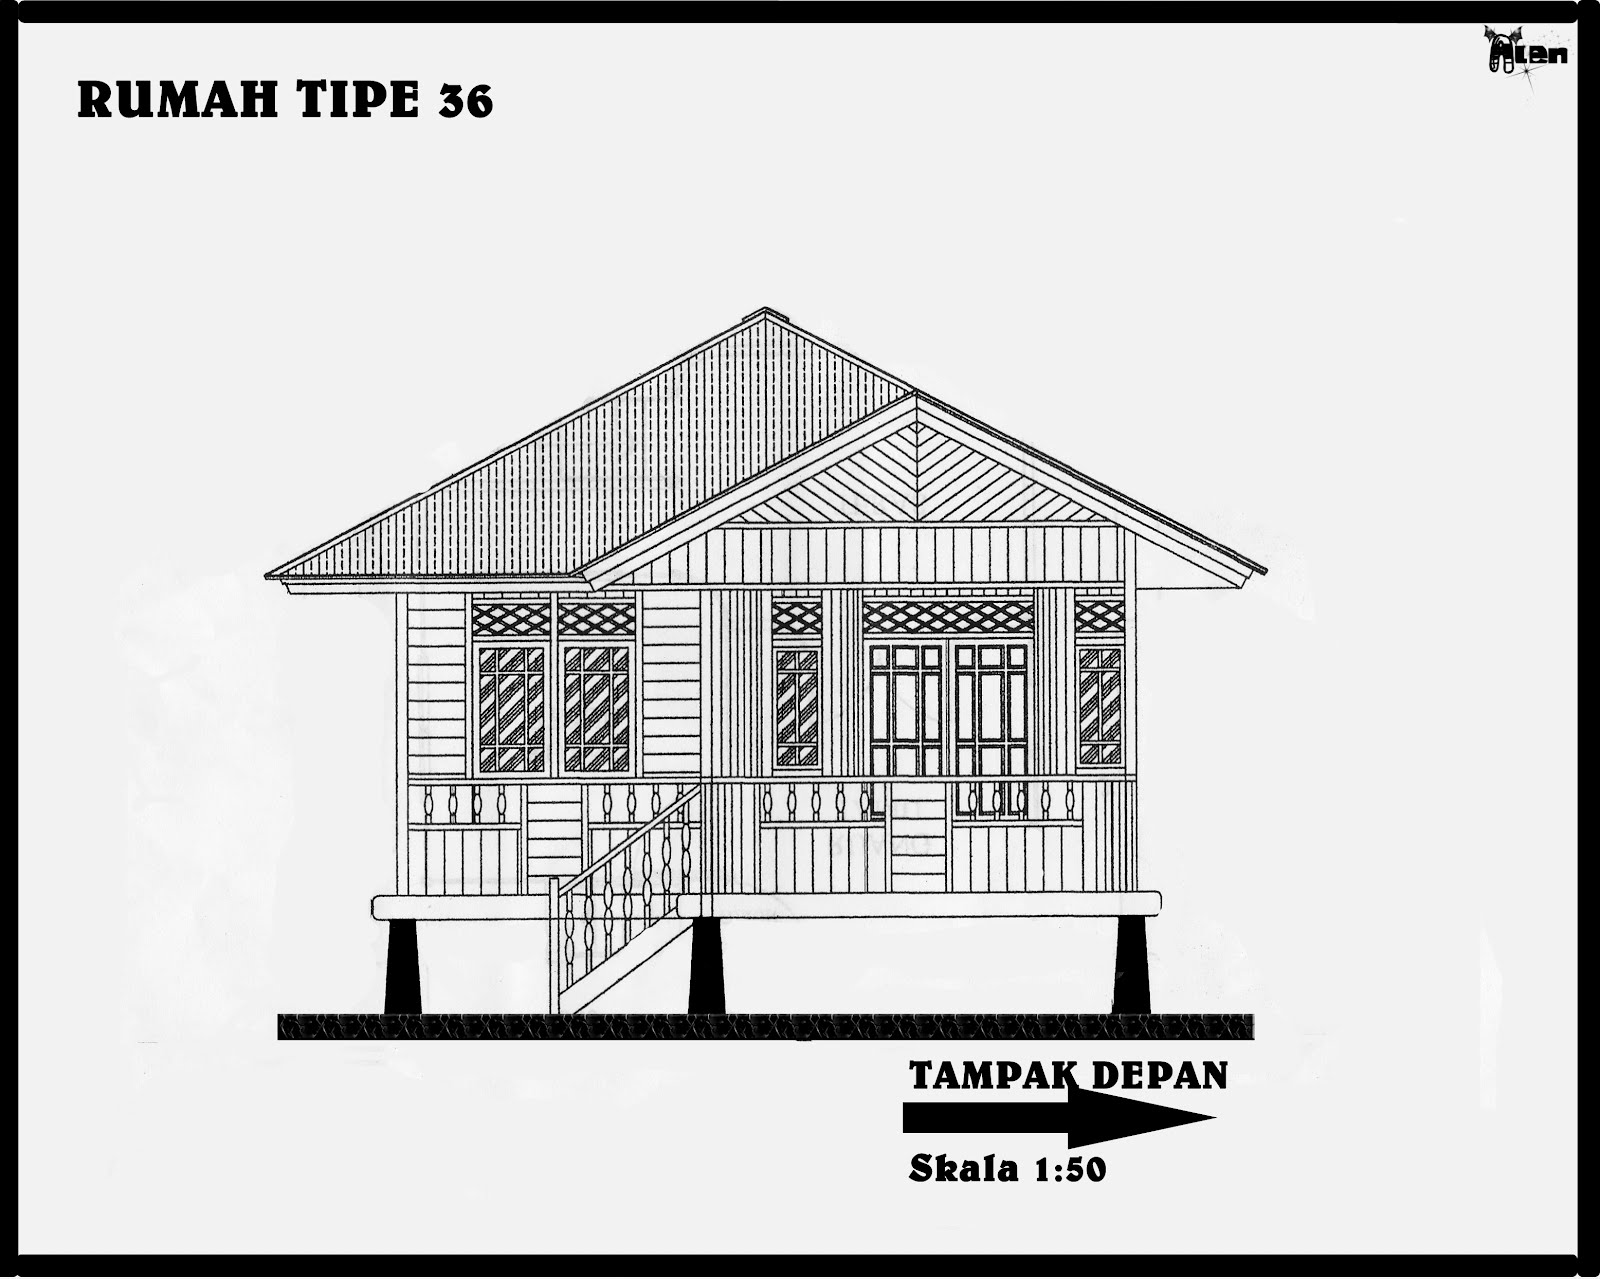 Rumah Panggung Minahasa Woloan: Desain Gambar Rumah Ukuran 36 Tampak